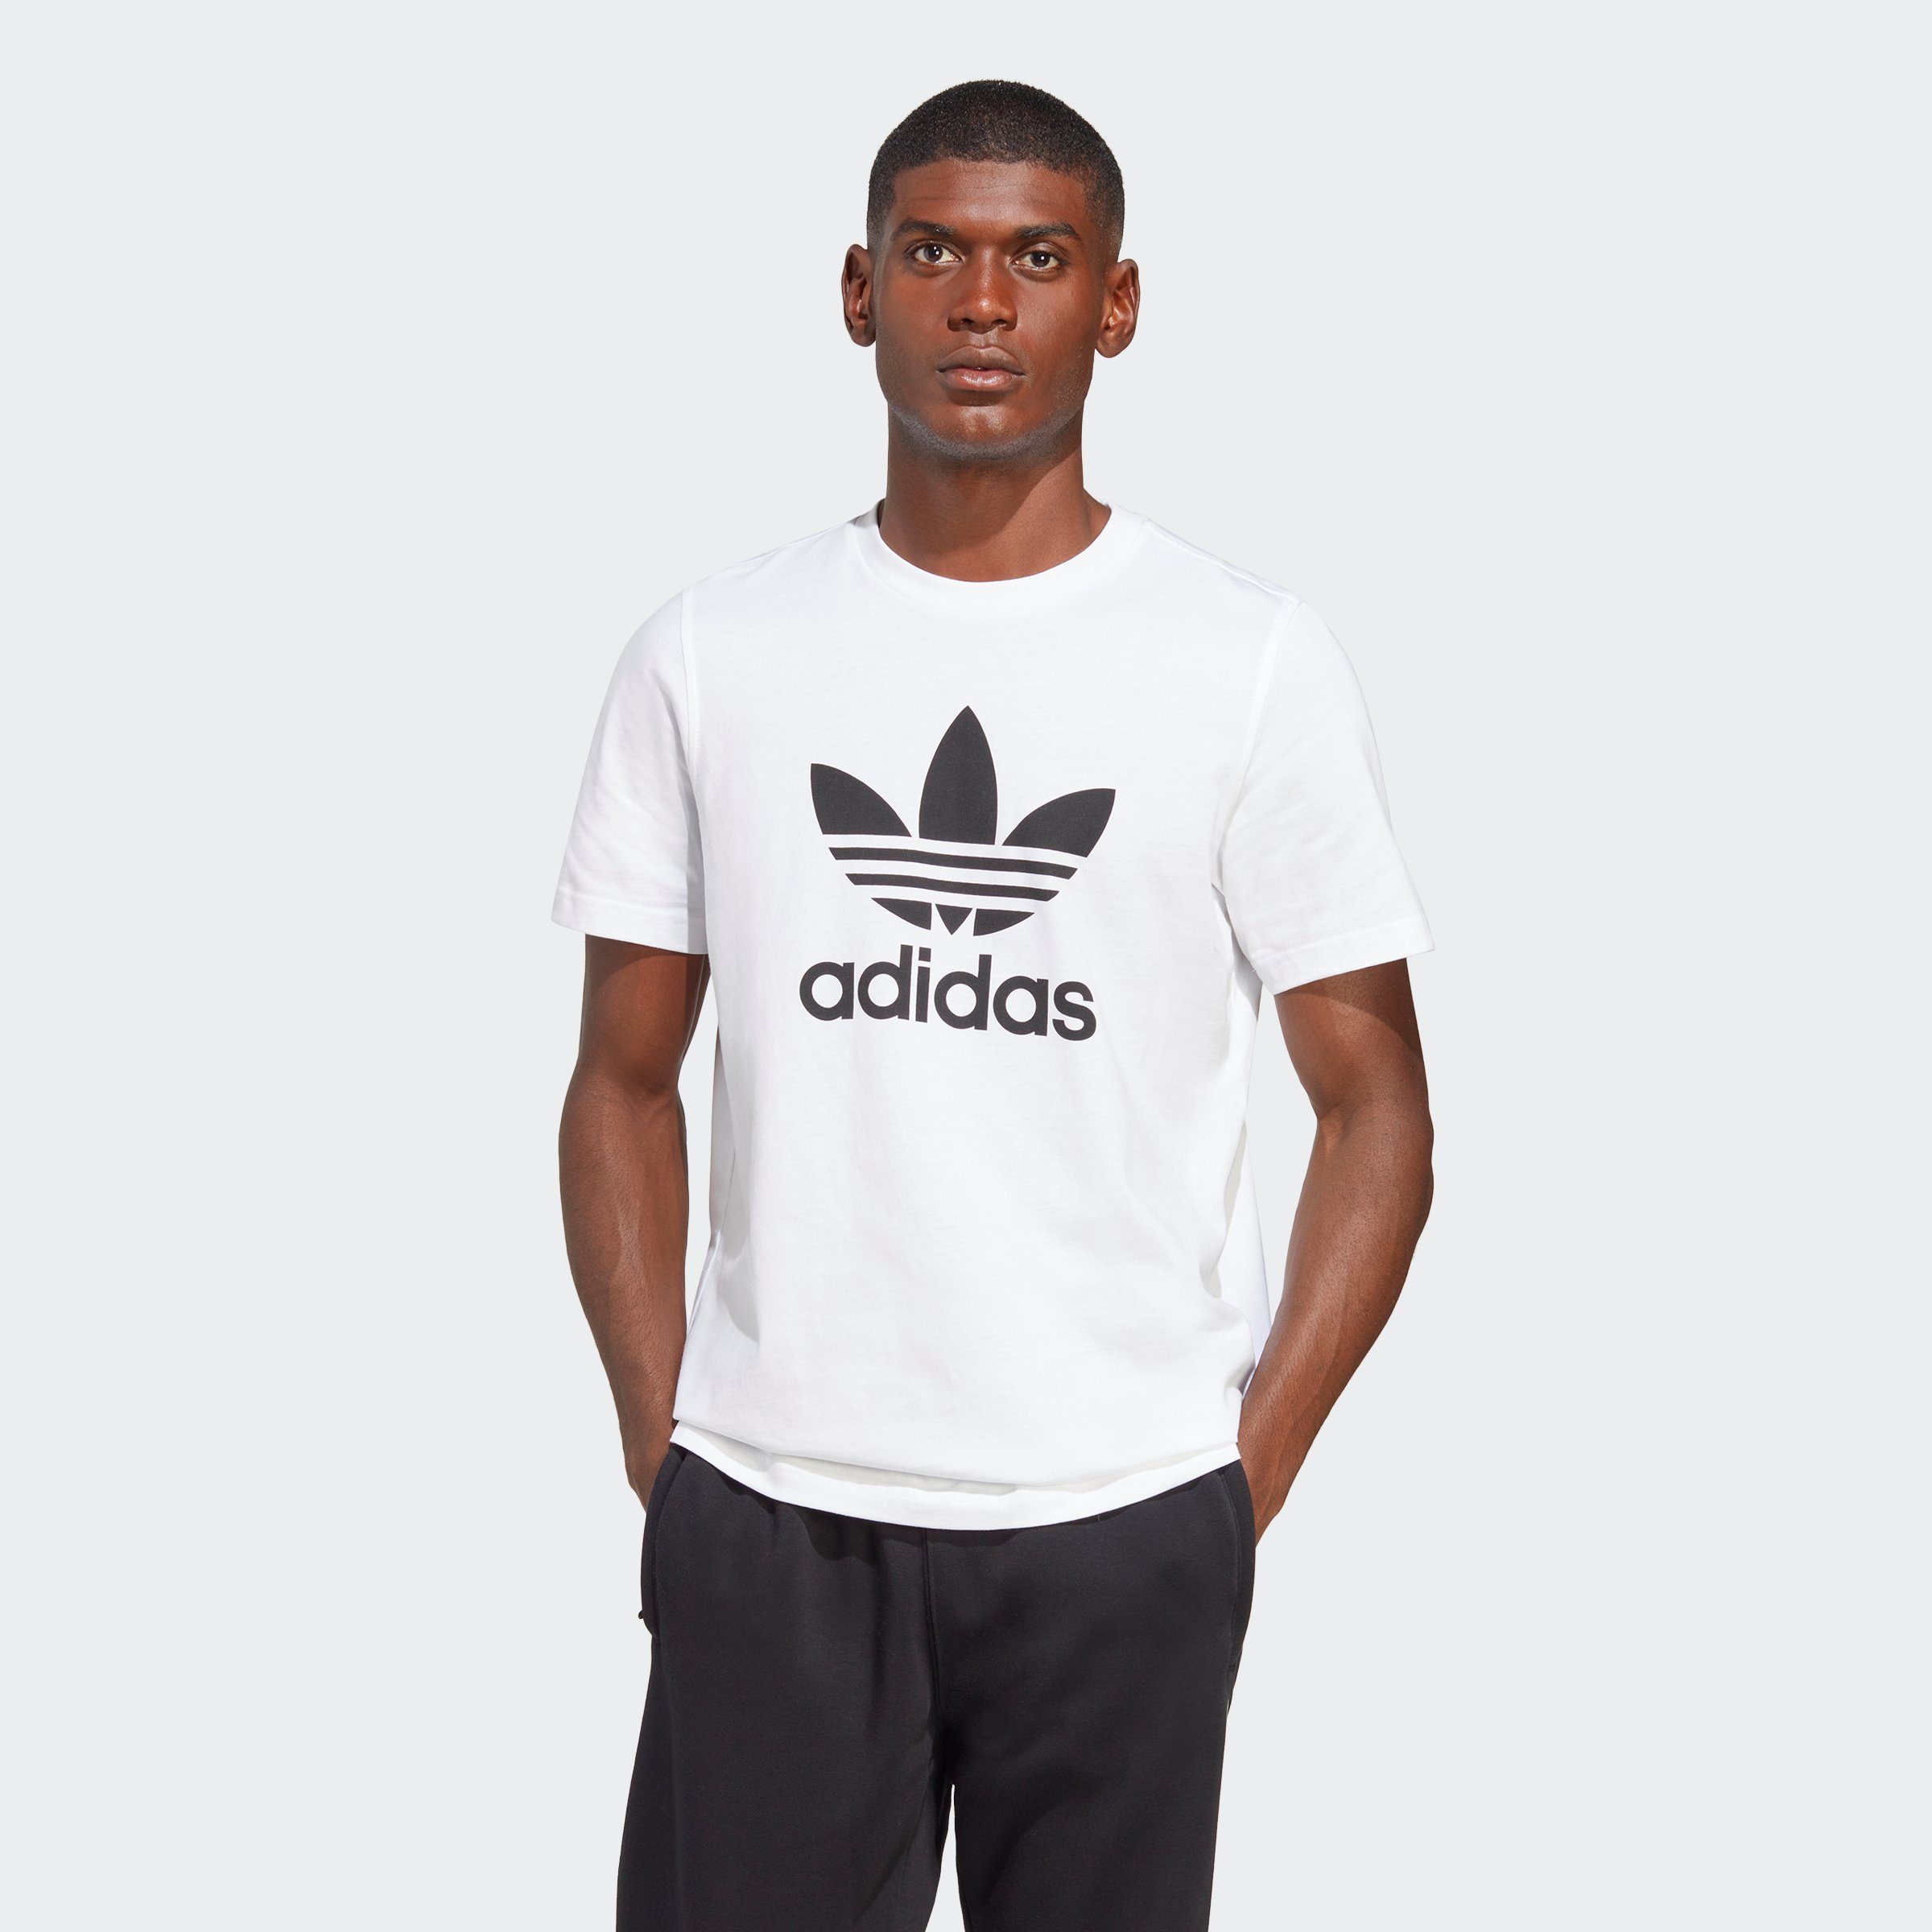 adidas Originals T-Shirt TREFOIL Black ADICOLOR White / CLASSICS